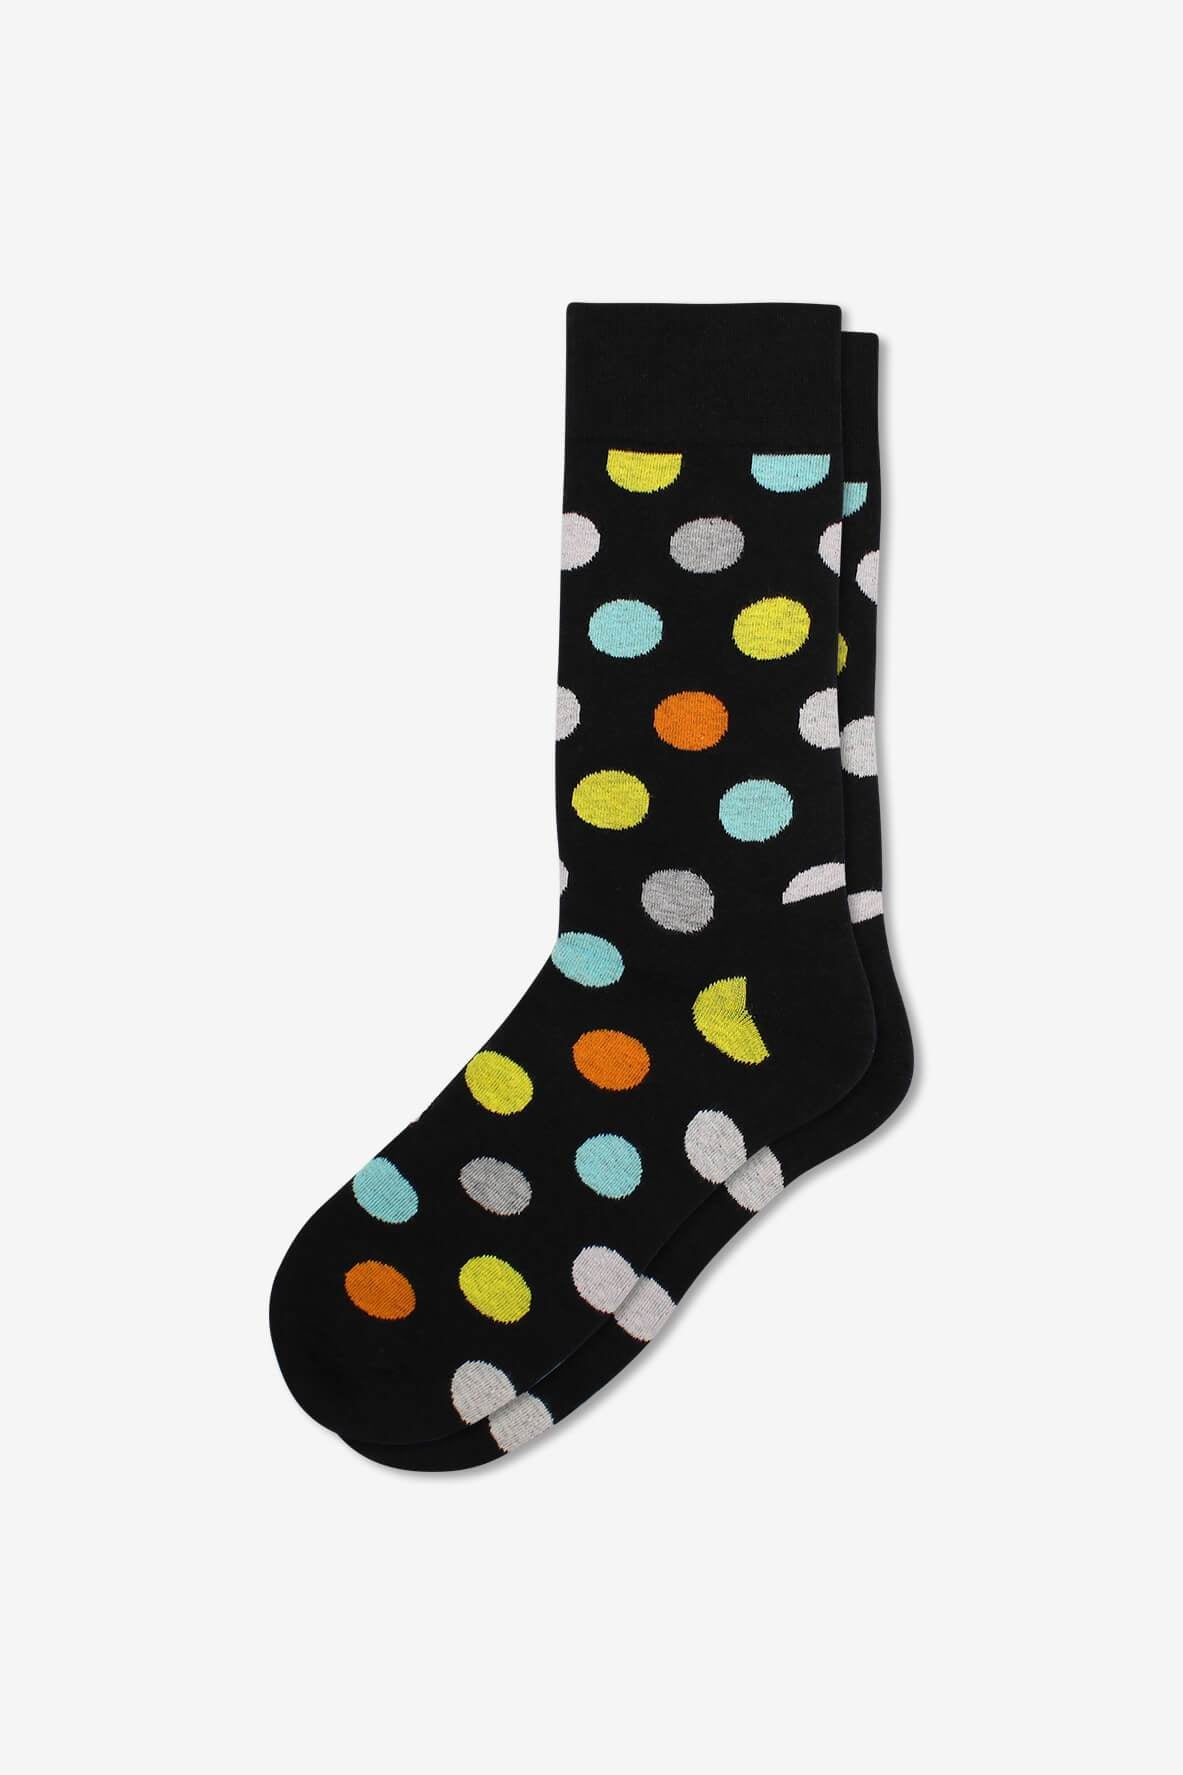 Socks IMG_5351, socks, GoTie